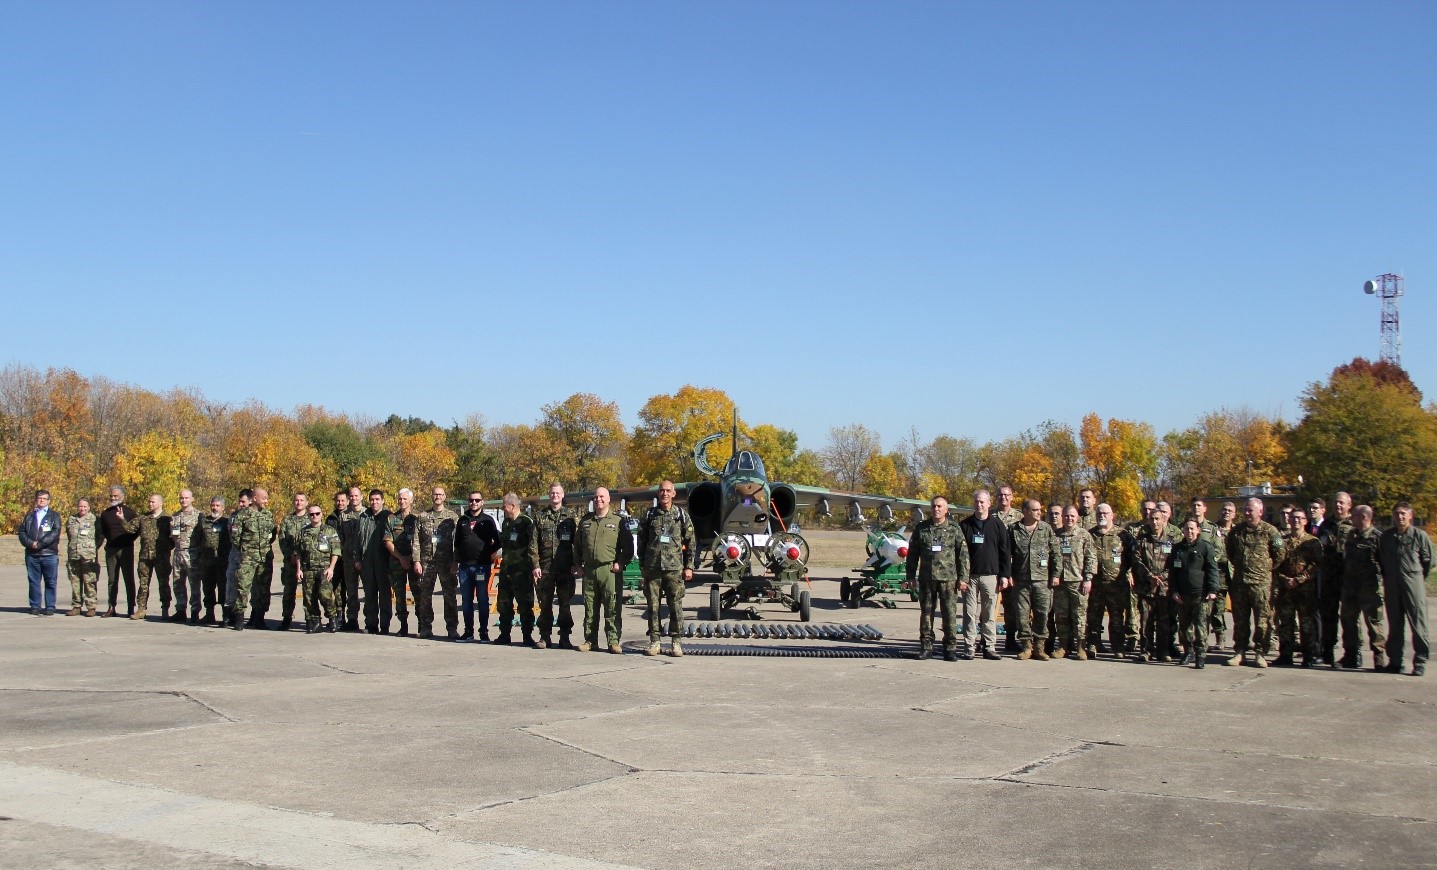 Group photo at the 22nd Air Base